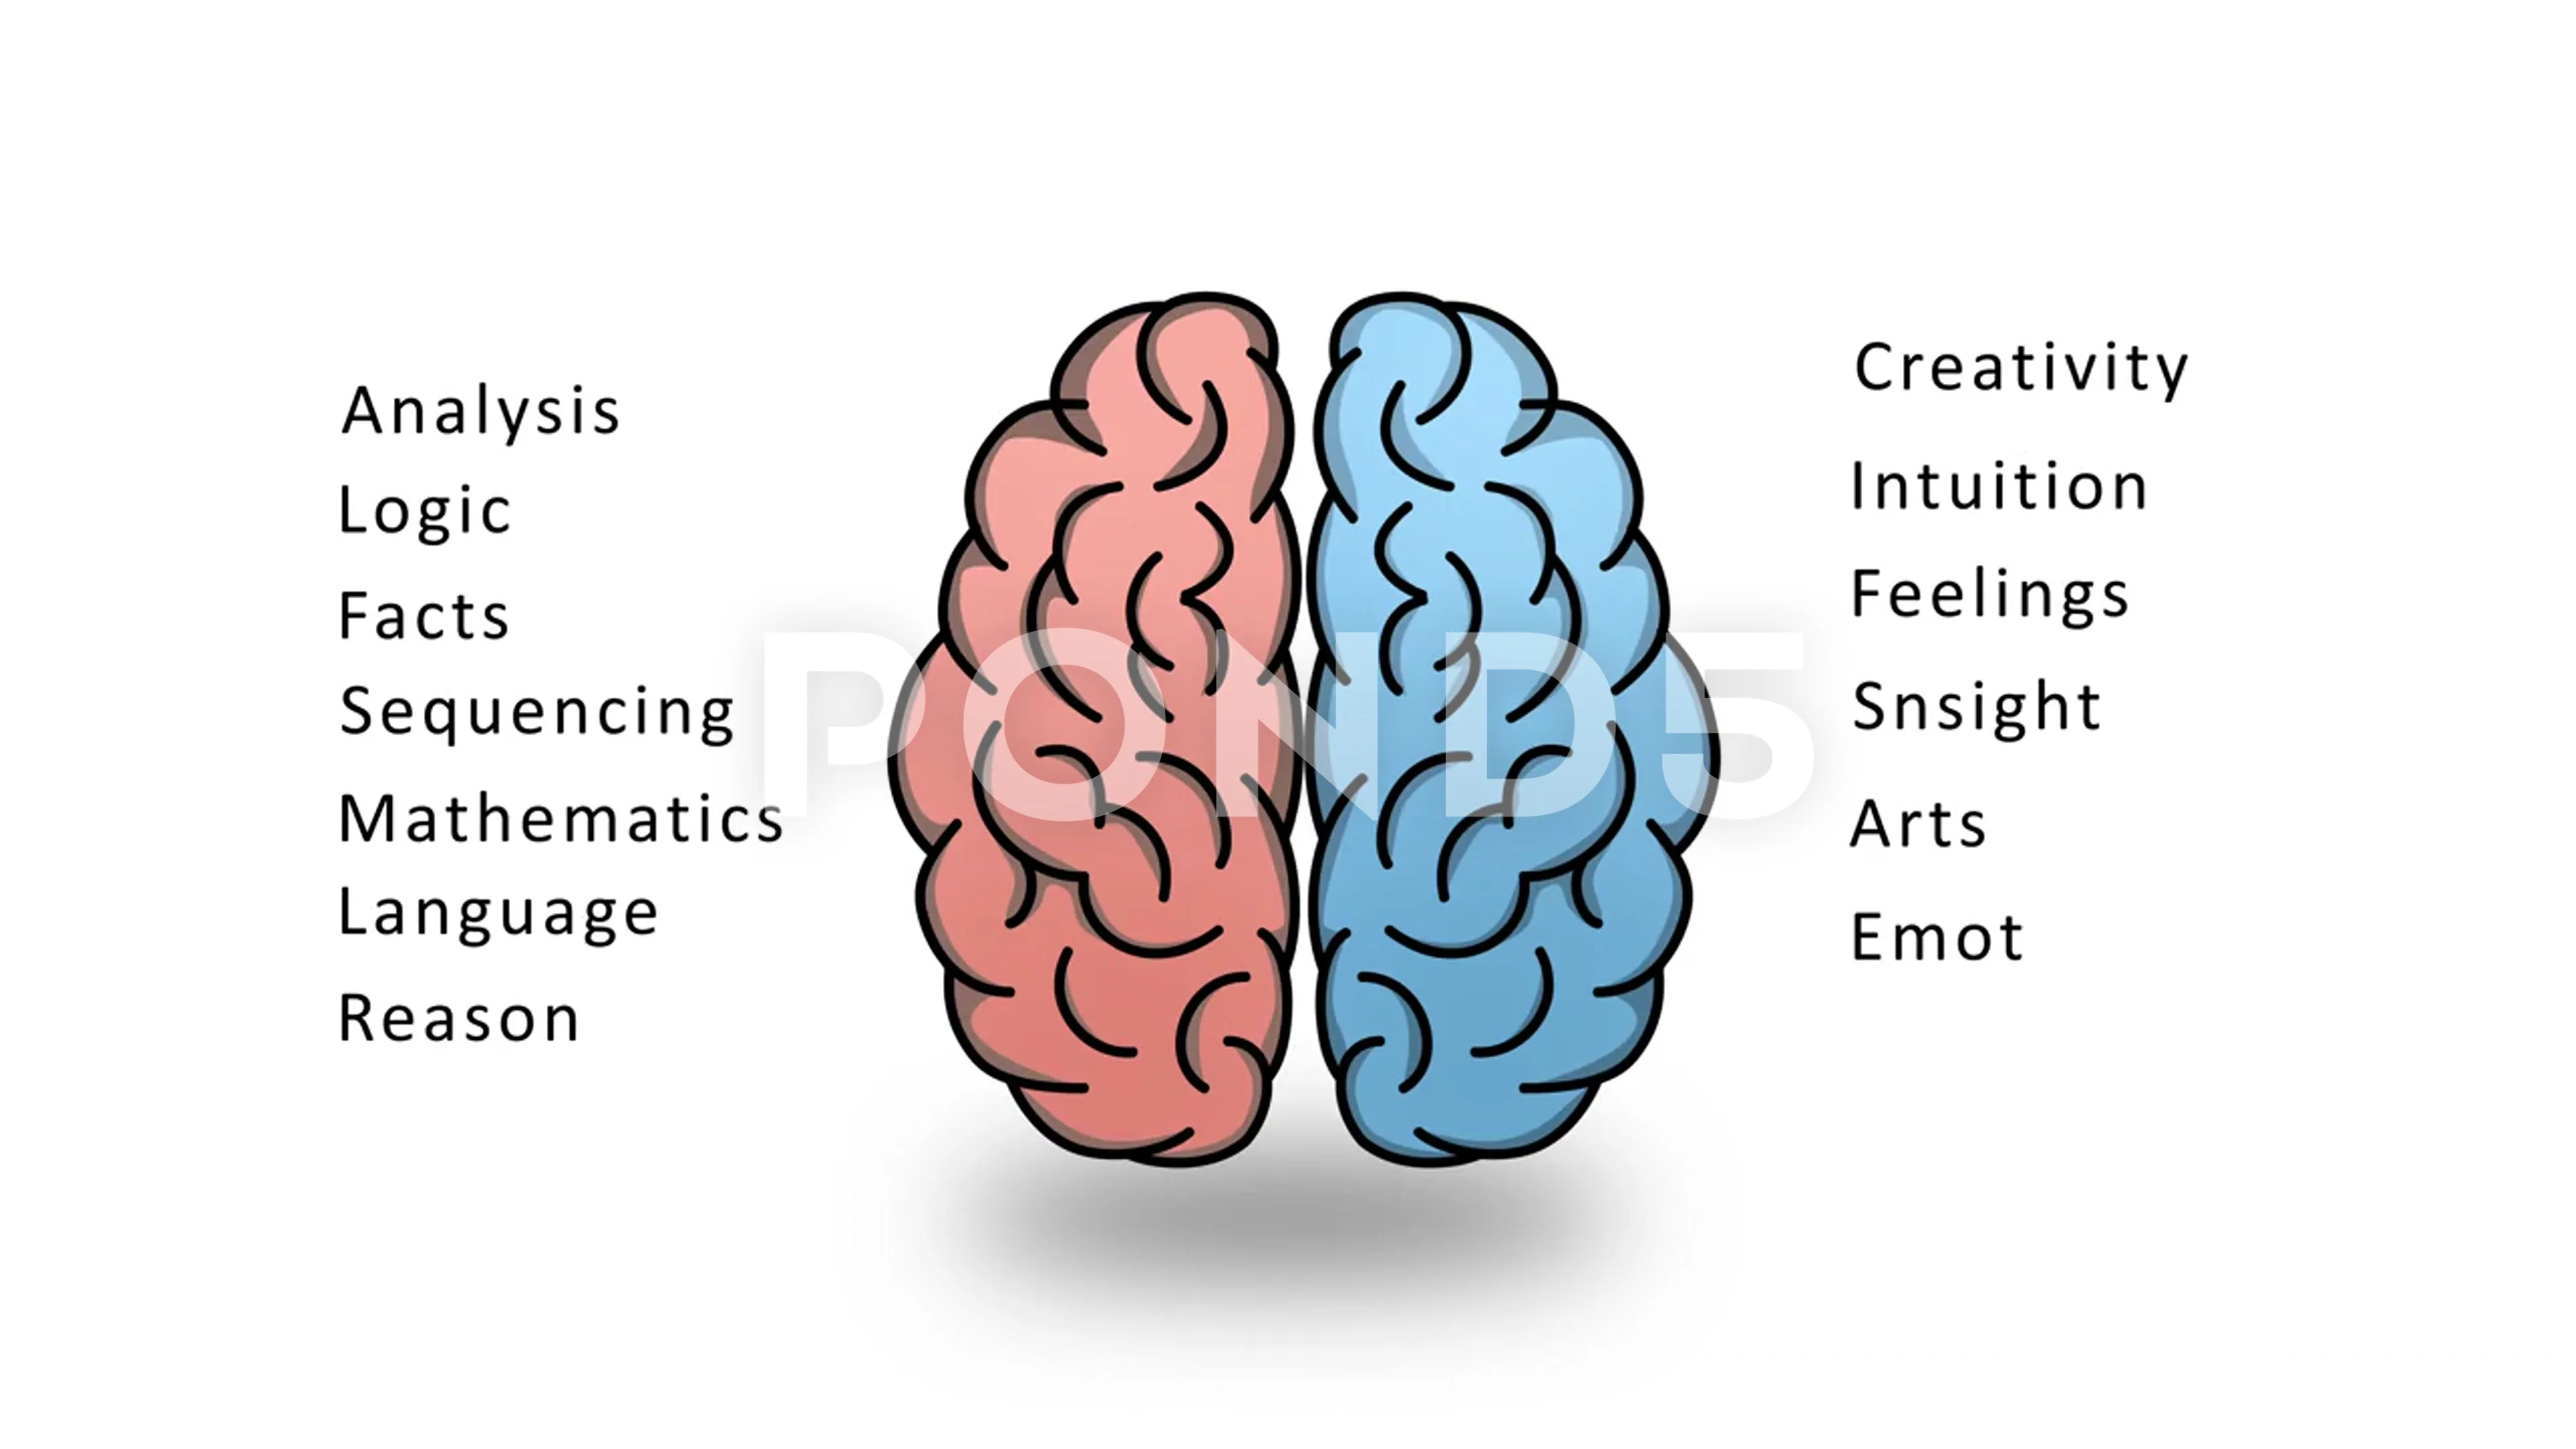 left brain diagram